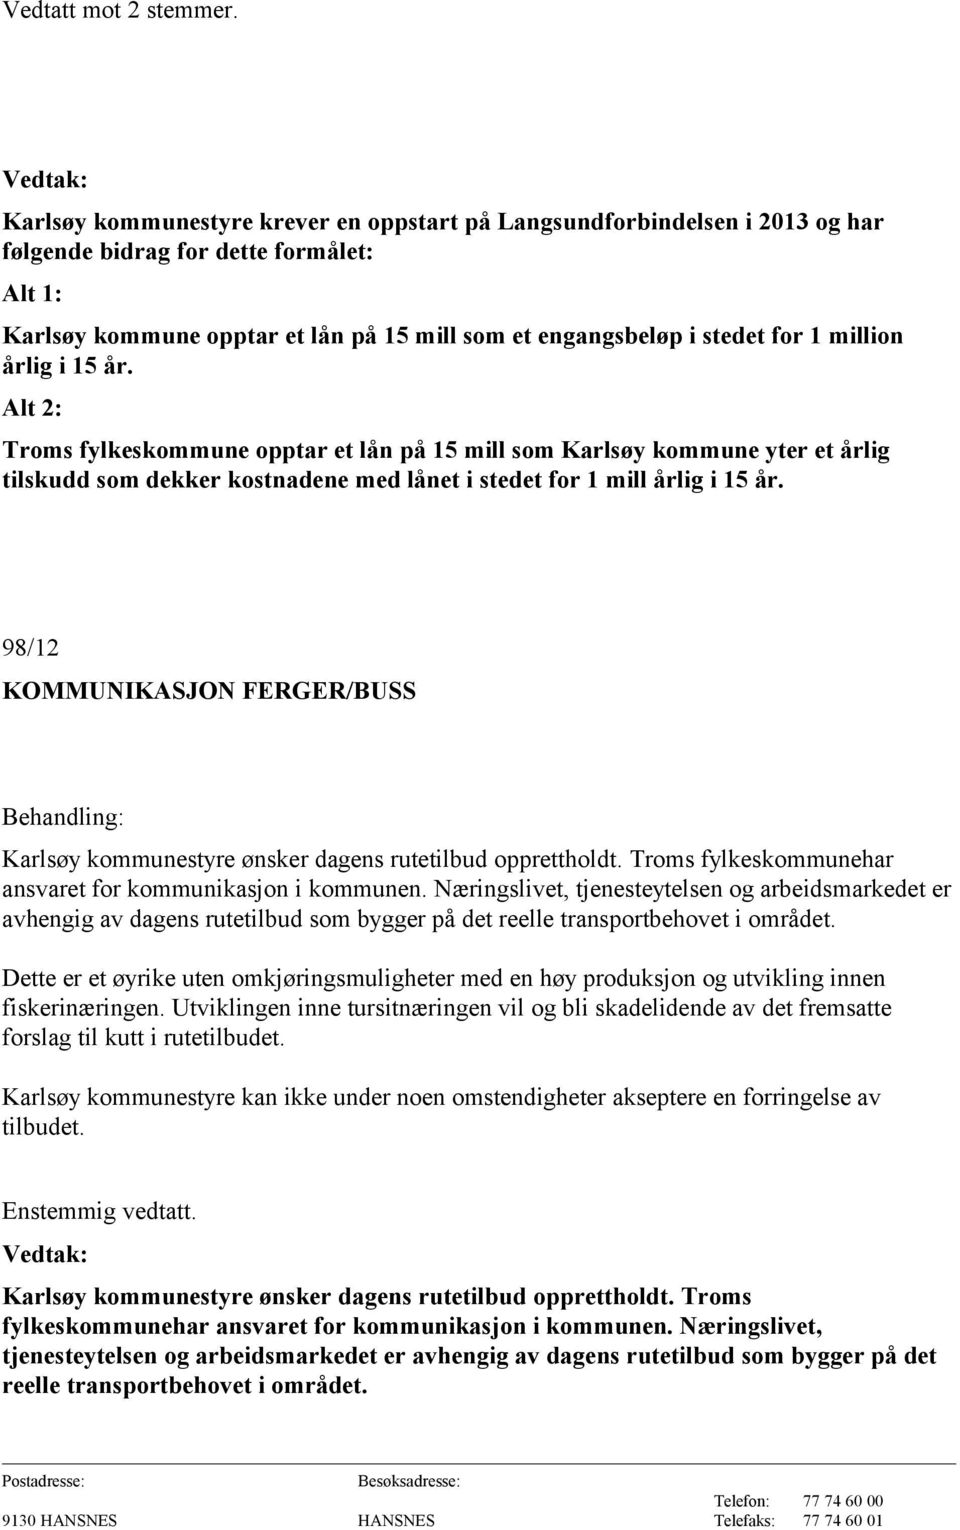 million årlig i 15 år. Alt 2: Troms fylkeskommune opptar et lån på 15 mill som Karlsøy kommune yter et årlig tilskudd som dekker kostnadene med lånet i stedet for 1 mill årlig i 15 år.